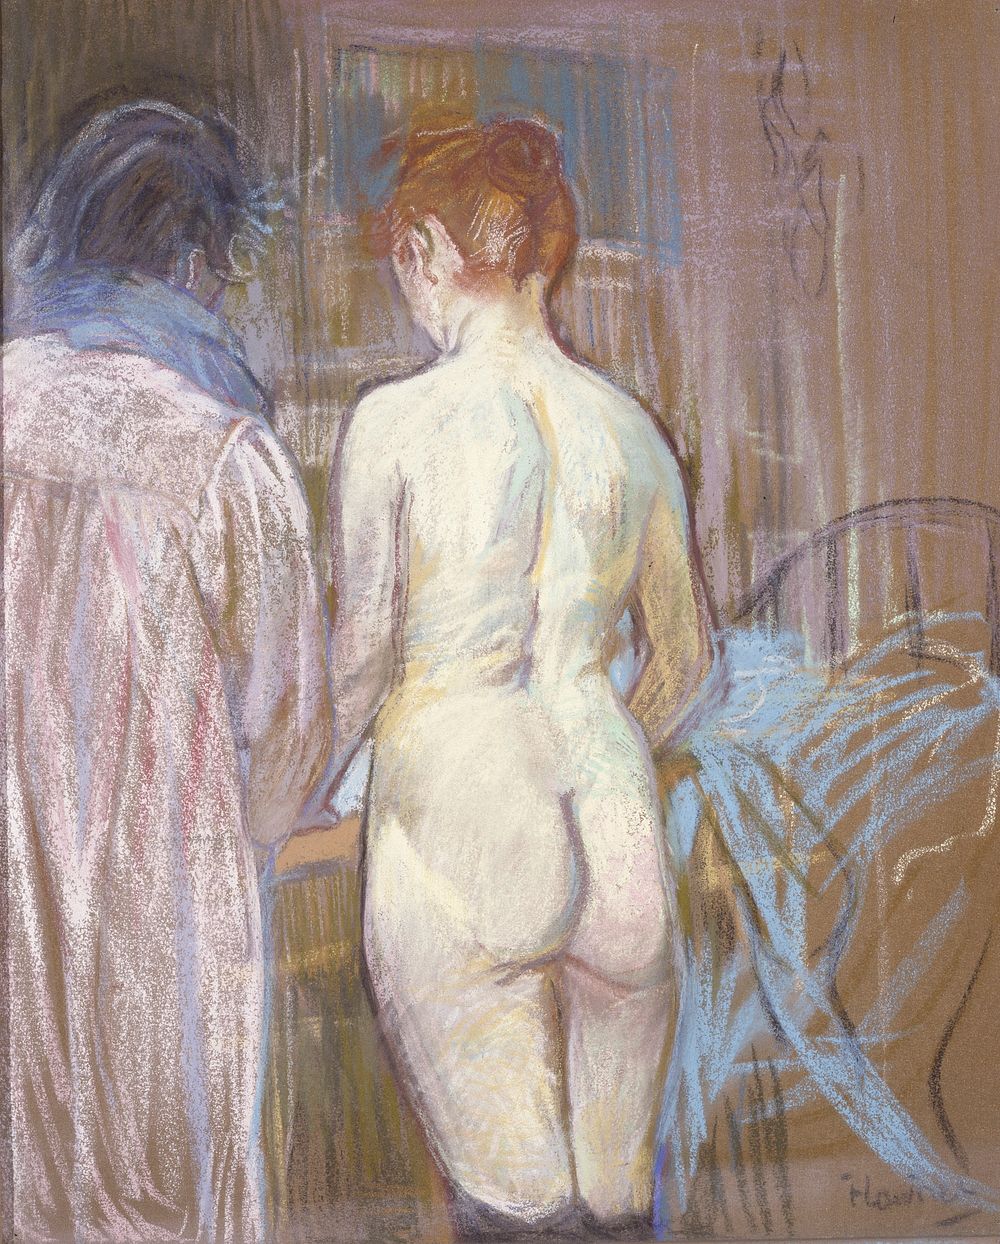 Prostitutes (Femmes de Maison) (c. 1893&ndash;1895) painting by Henri de Toulouse&ndash;Lautrec. 